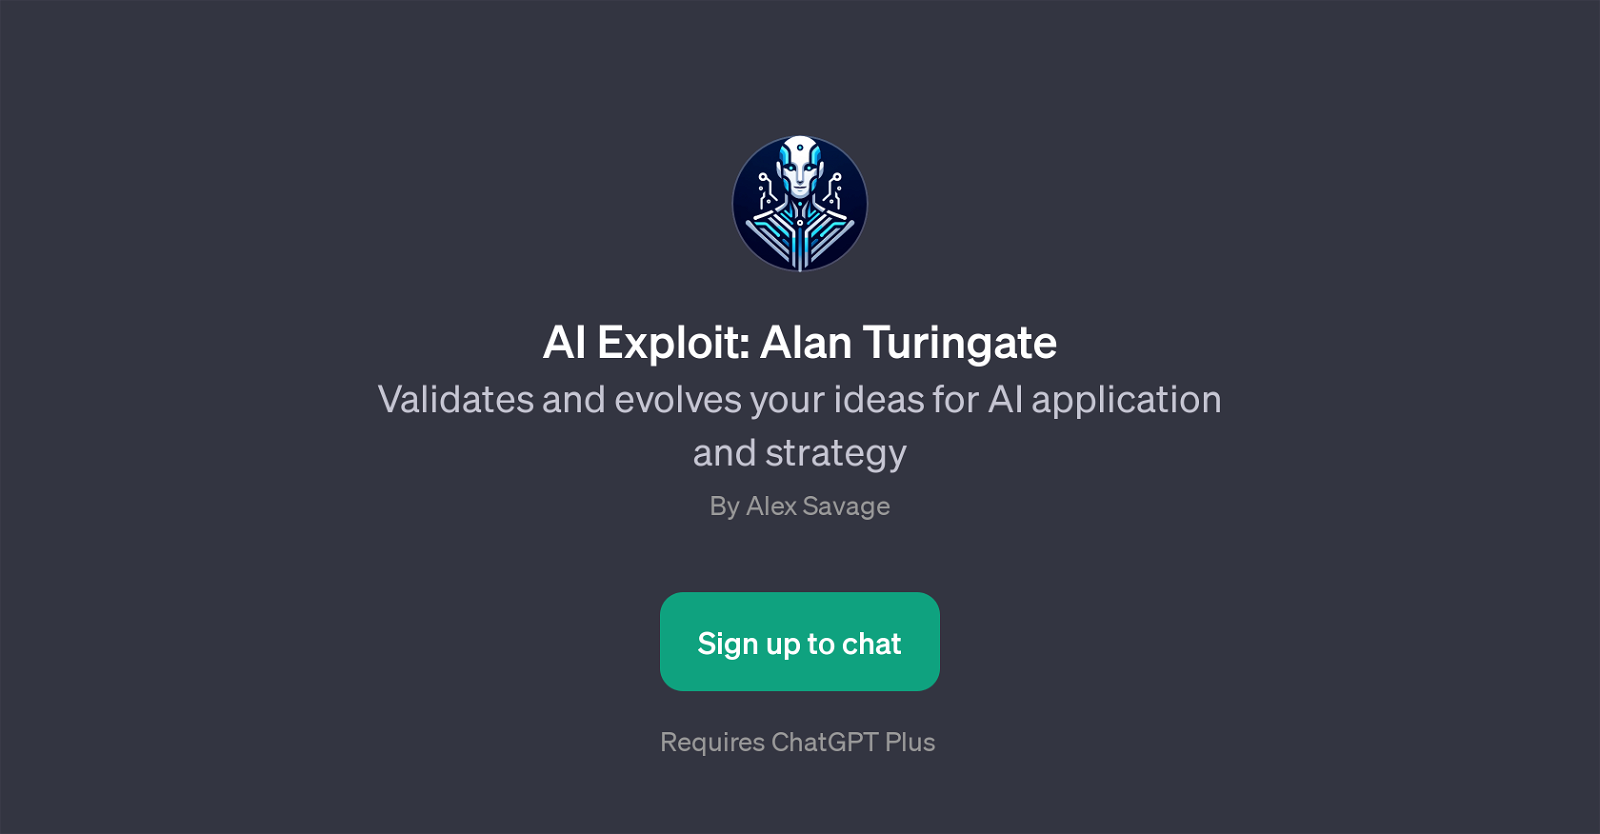 AI Exploit: Alan Turingate website